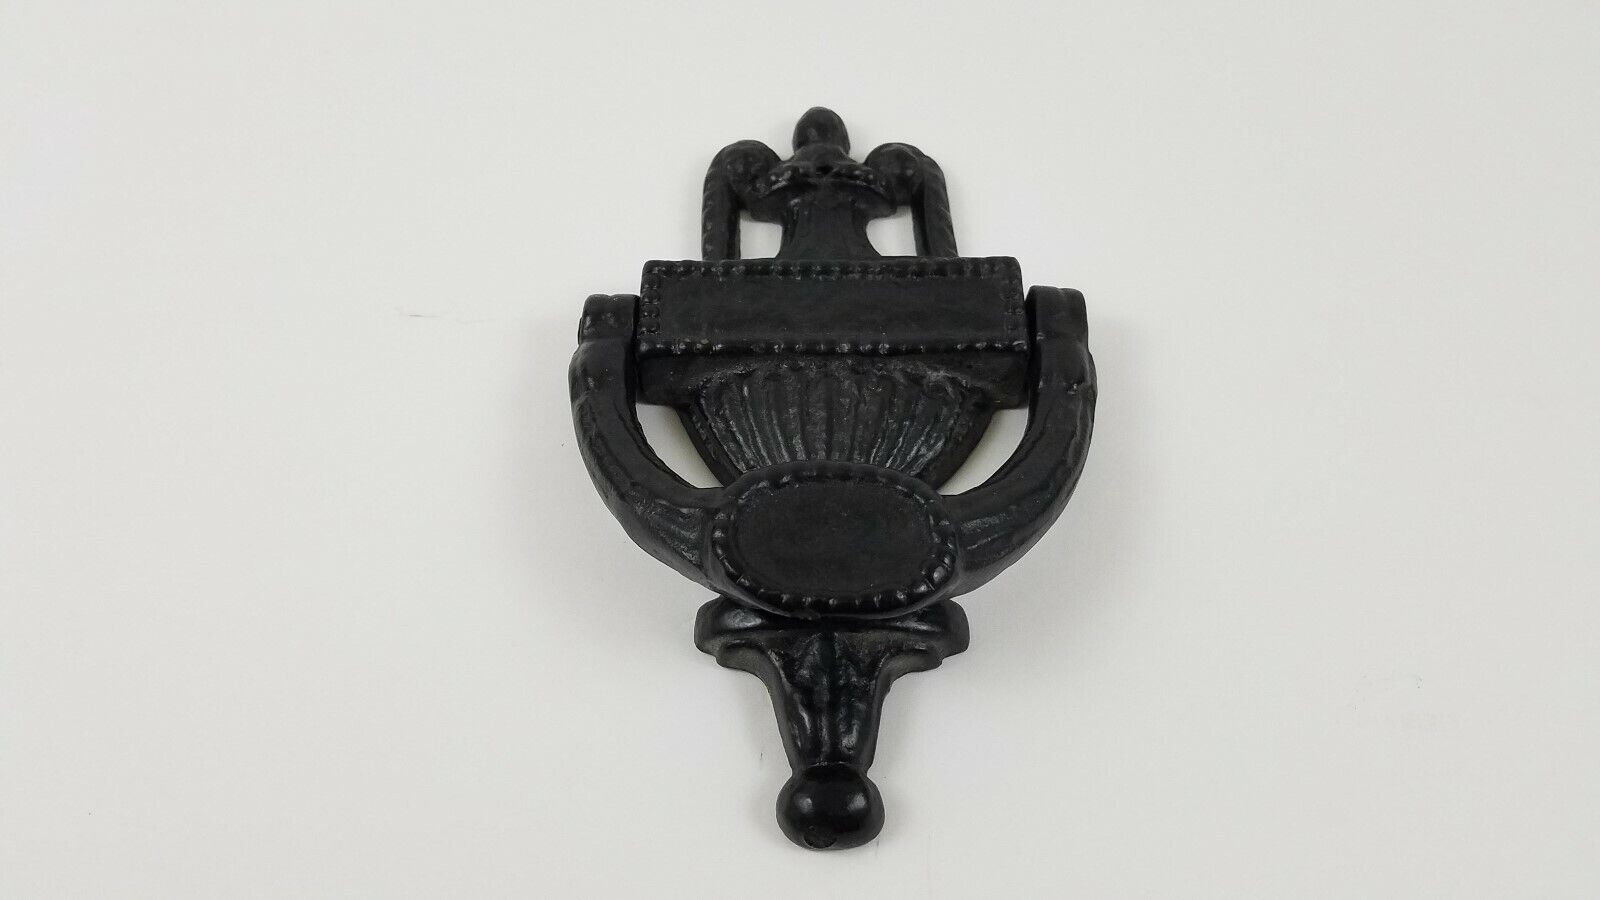 Vintage Black Cast Iron Doorknocker  Door Knocker Decorative Heavy Almost 2 Lbs